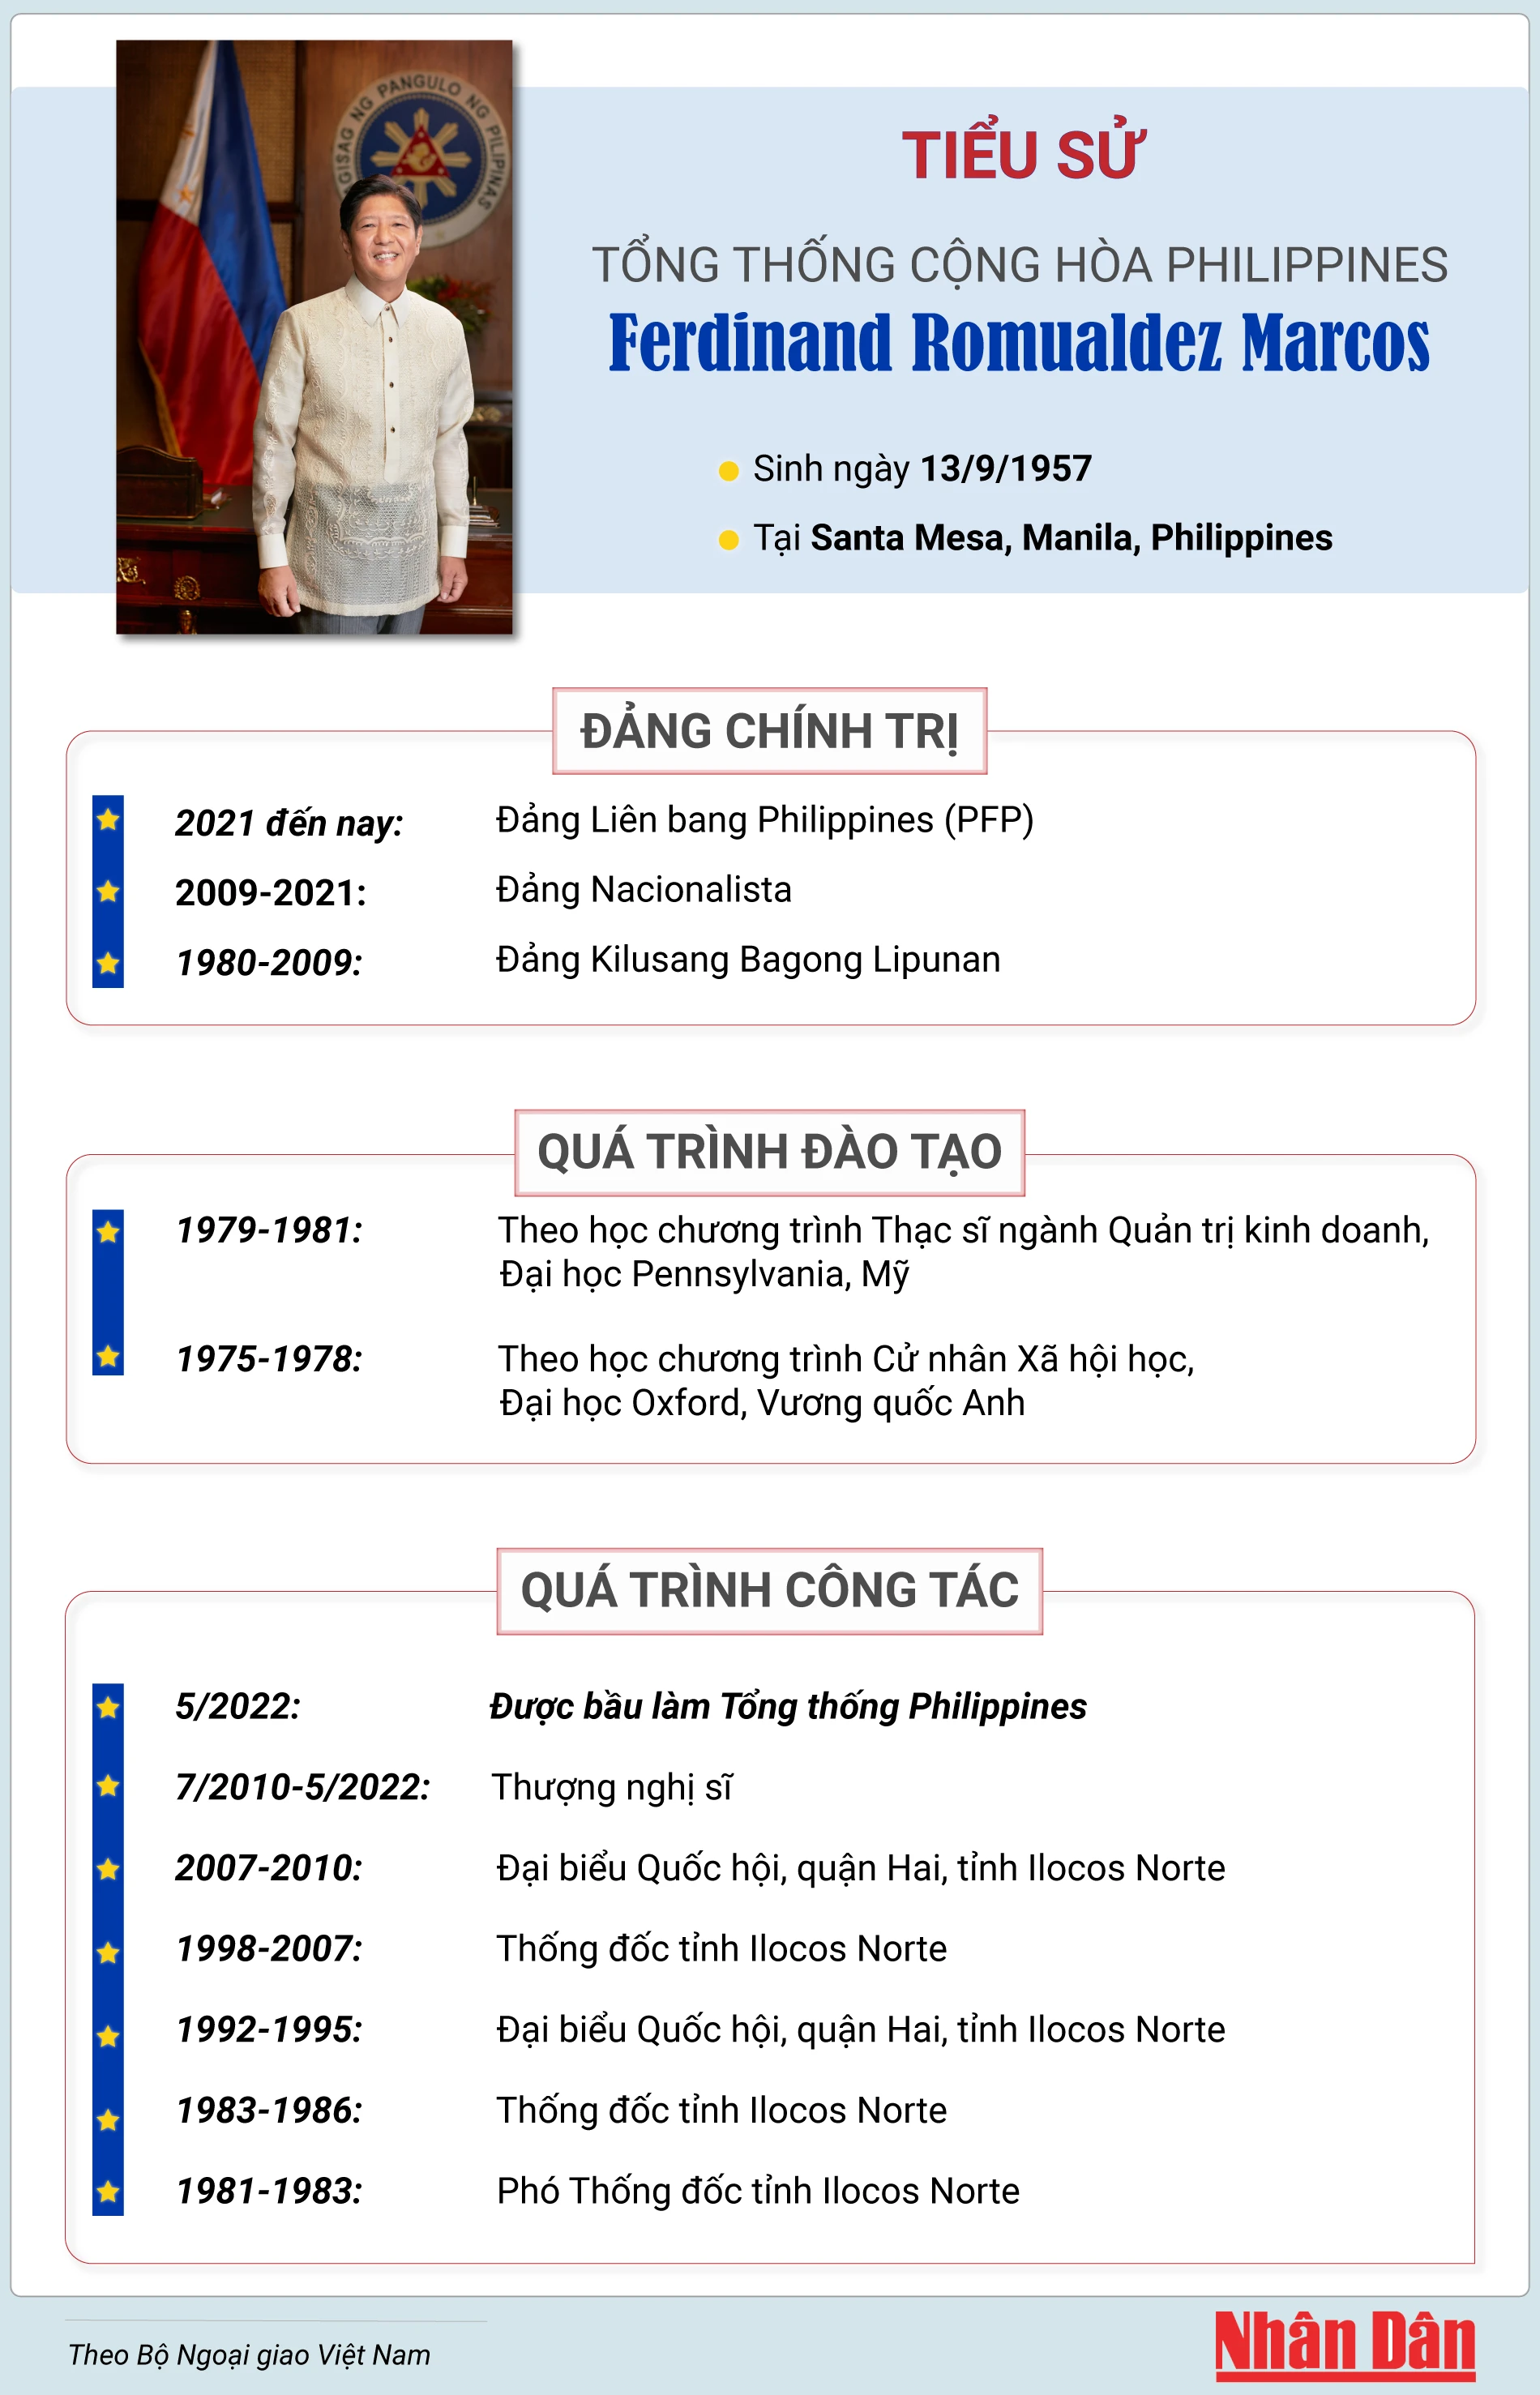 [Infographic] Tiểu sử Tổng thống Cộng hòa Philippines Ferdinand Romualdez Marcos ảnh 1